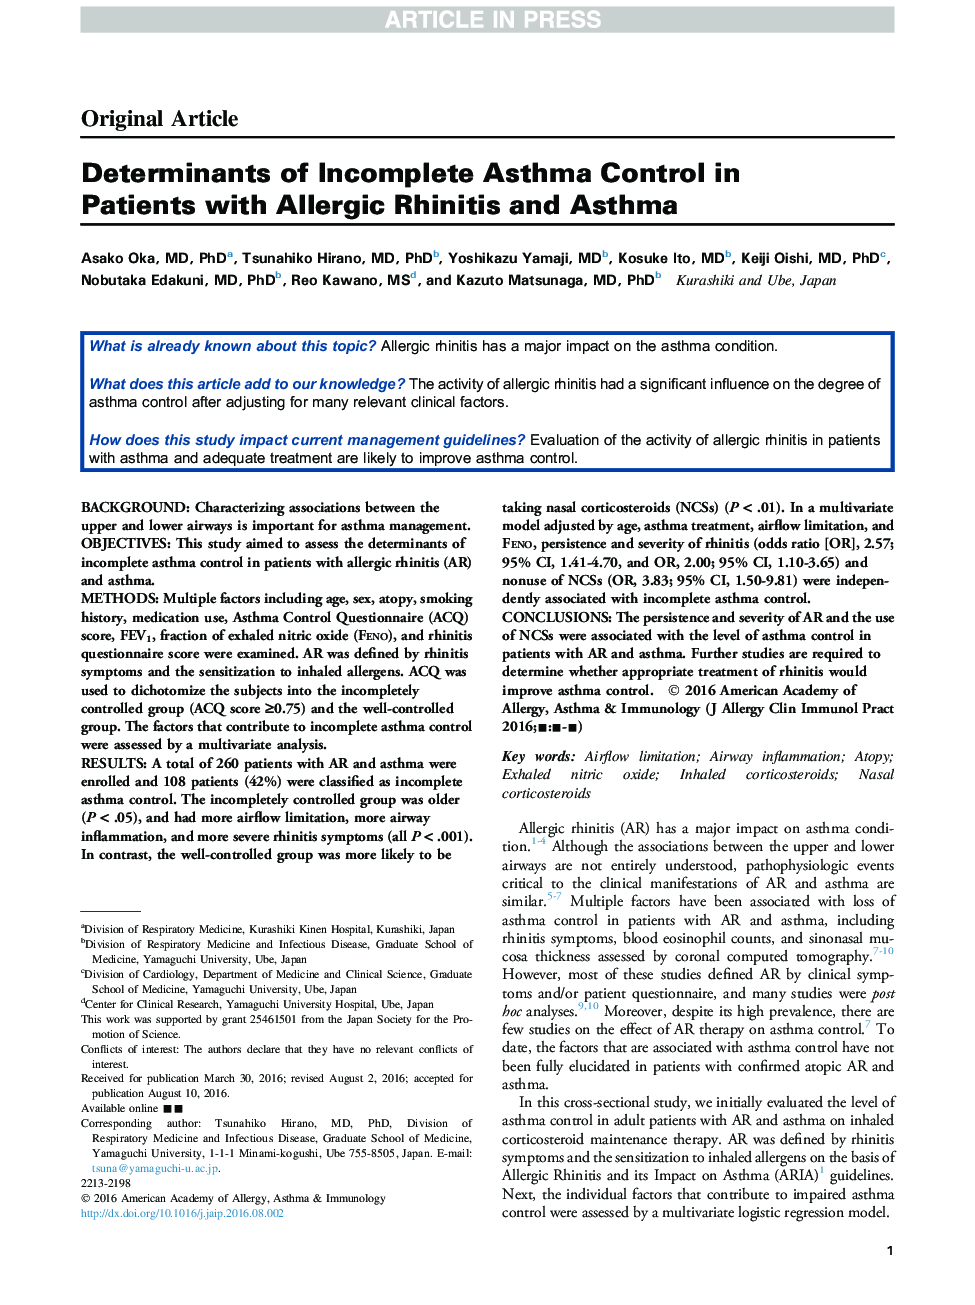 عوامل تعیین کننده کنترل آسم ناکام در بیماران مبتلا به رینیت آلرژیک و آسم 